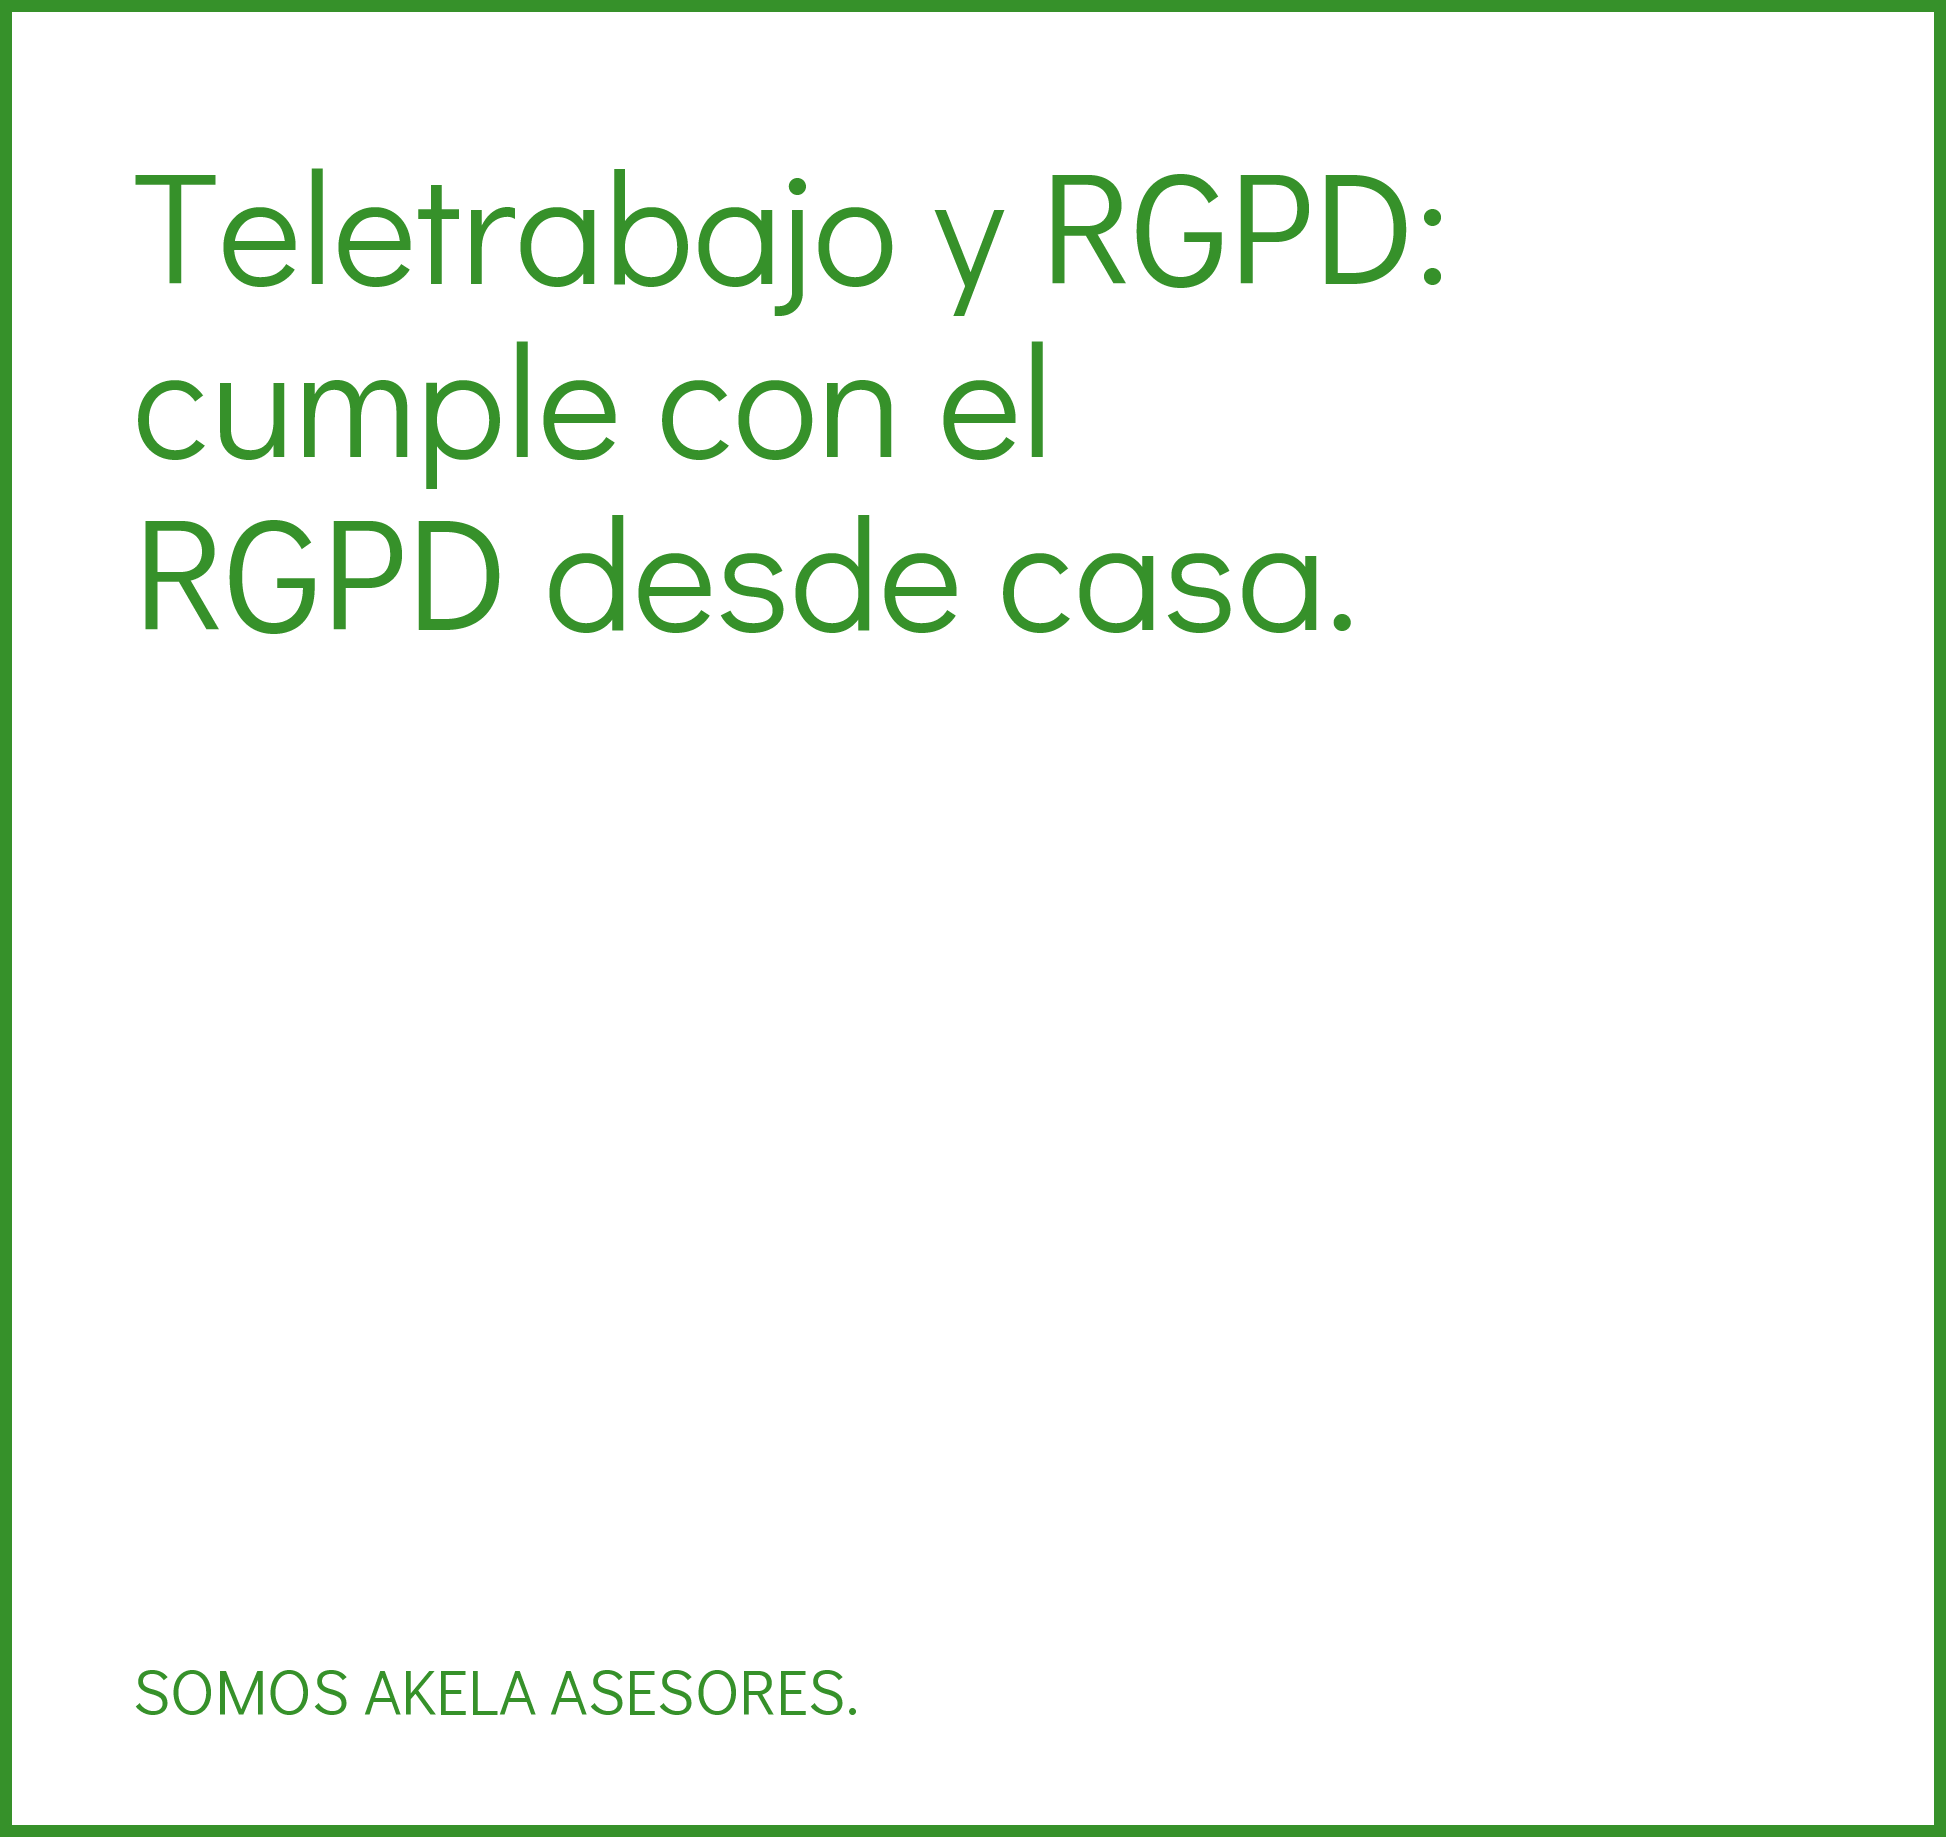 En este momento estás viendo Teletrabajo y RGPD: cumple con el RGPD desde casa